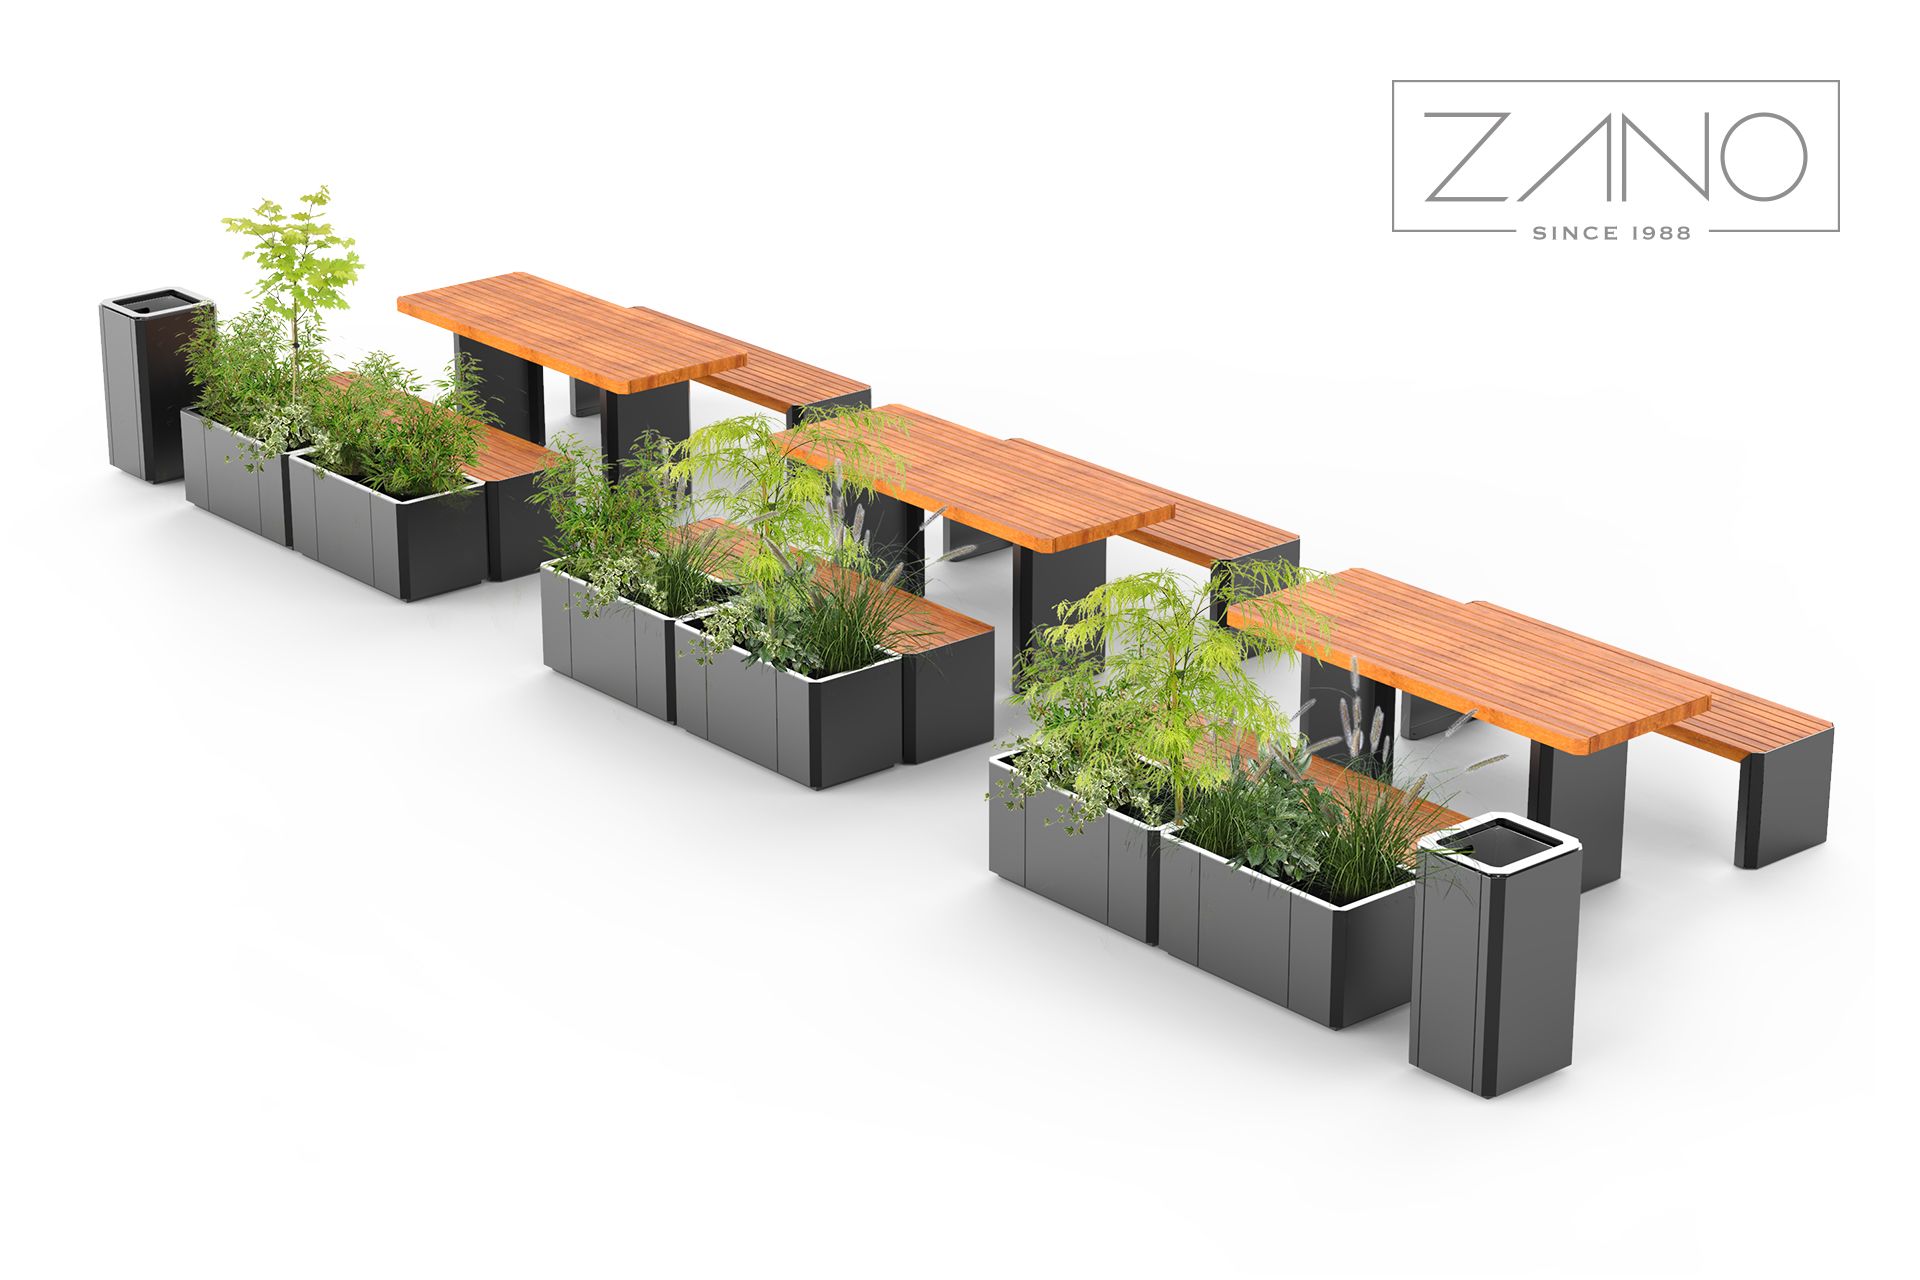 Stilo - bănci și jardiniere de la ZANO mobilier urban